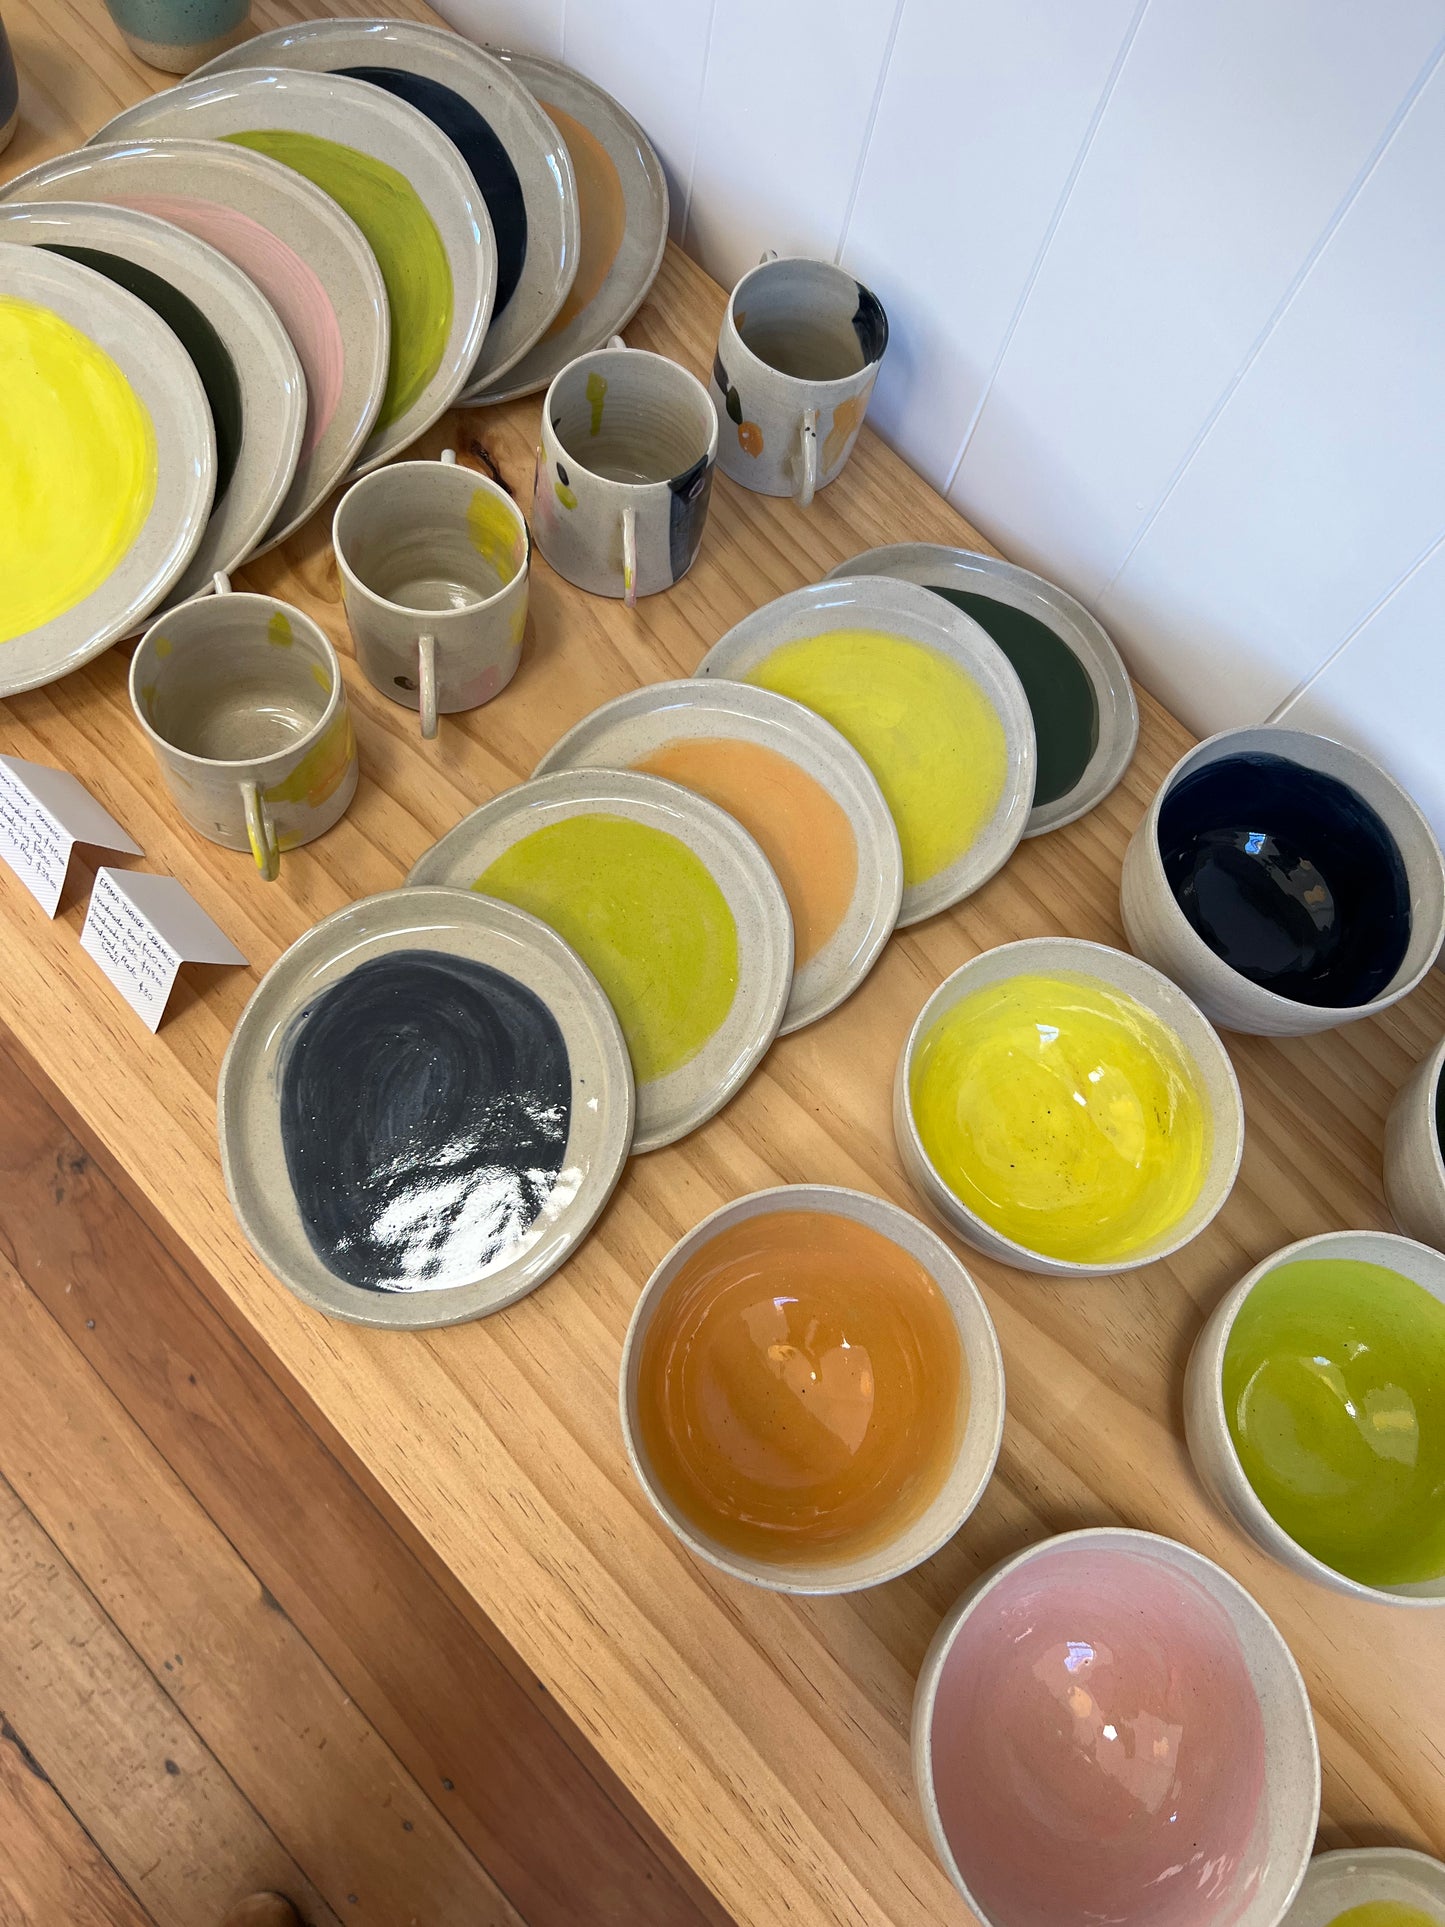 Handmade Ceramic Round Plate - Yellow